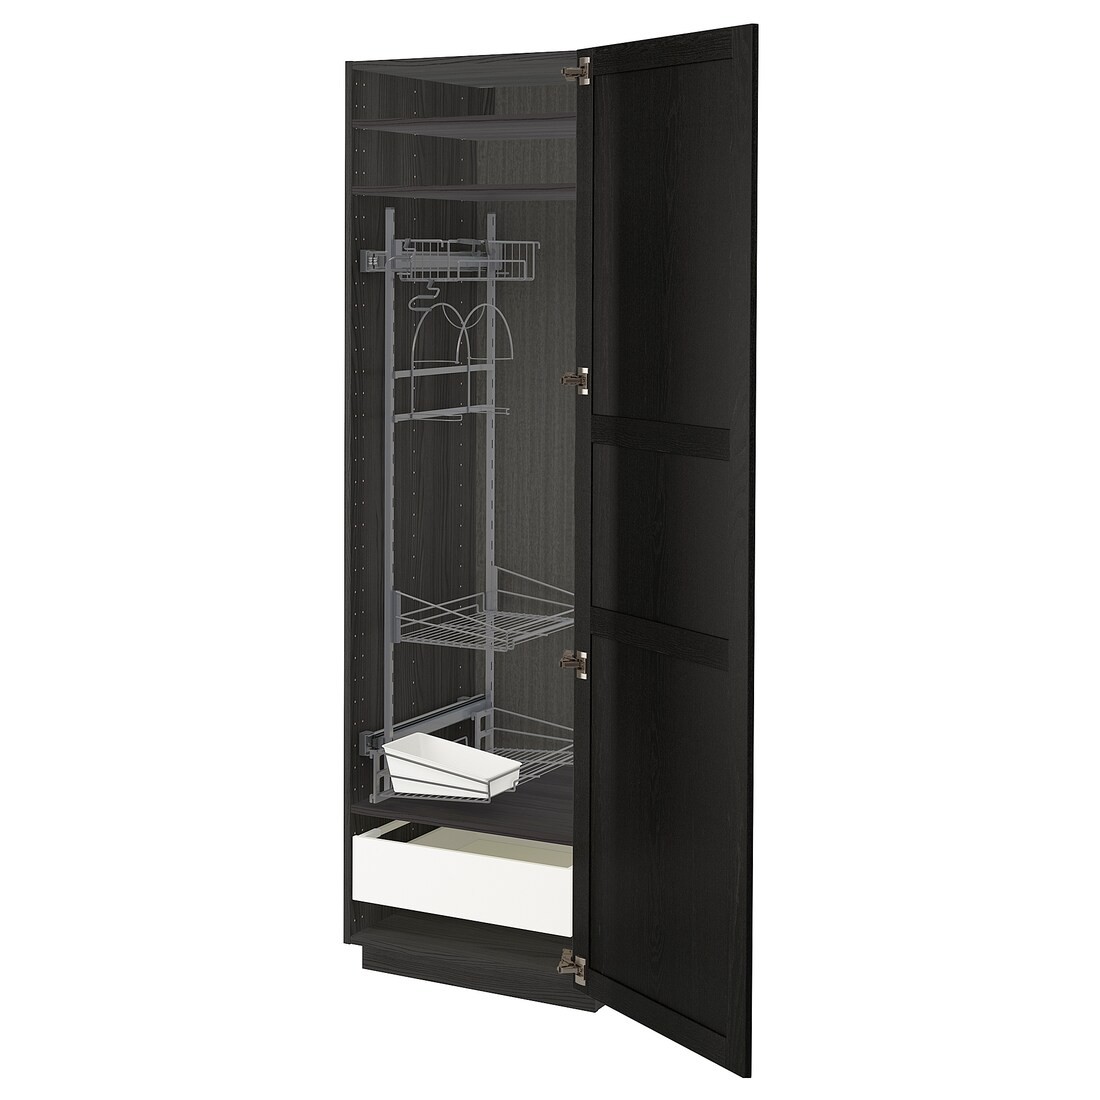 METOD МЕТОД / MAXIMERA МАКСИМЕРА Высокий шкаф с отделением для аксессуаров для уборки, черный / Lerhyttan черная морилка, 60x60x200 см